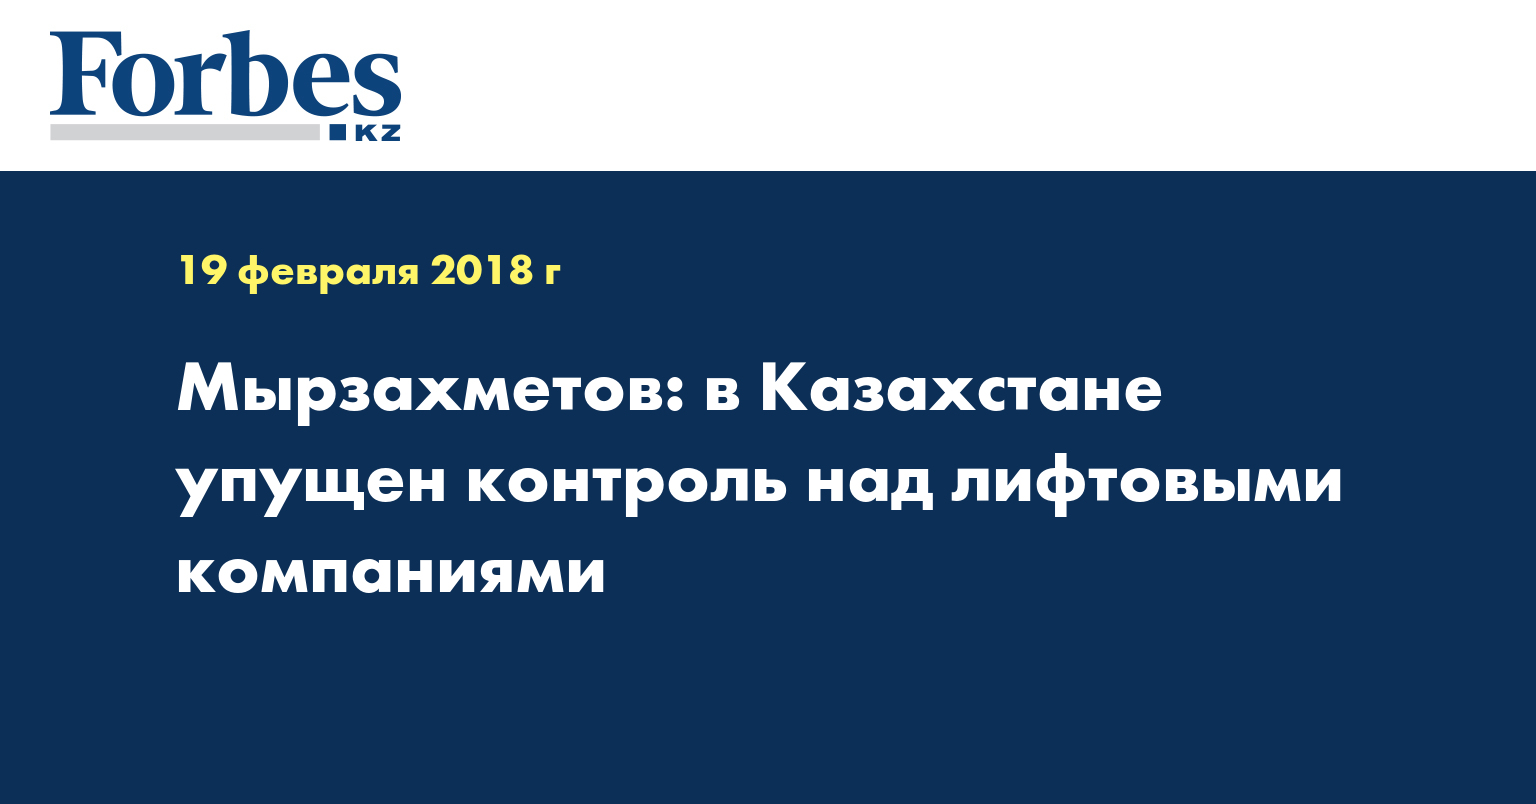 Мырзахметов: в Казахстане упущен контроль над лифтовыми компаниями